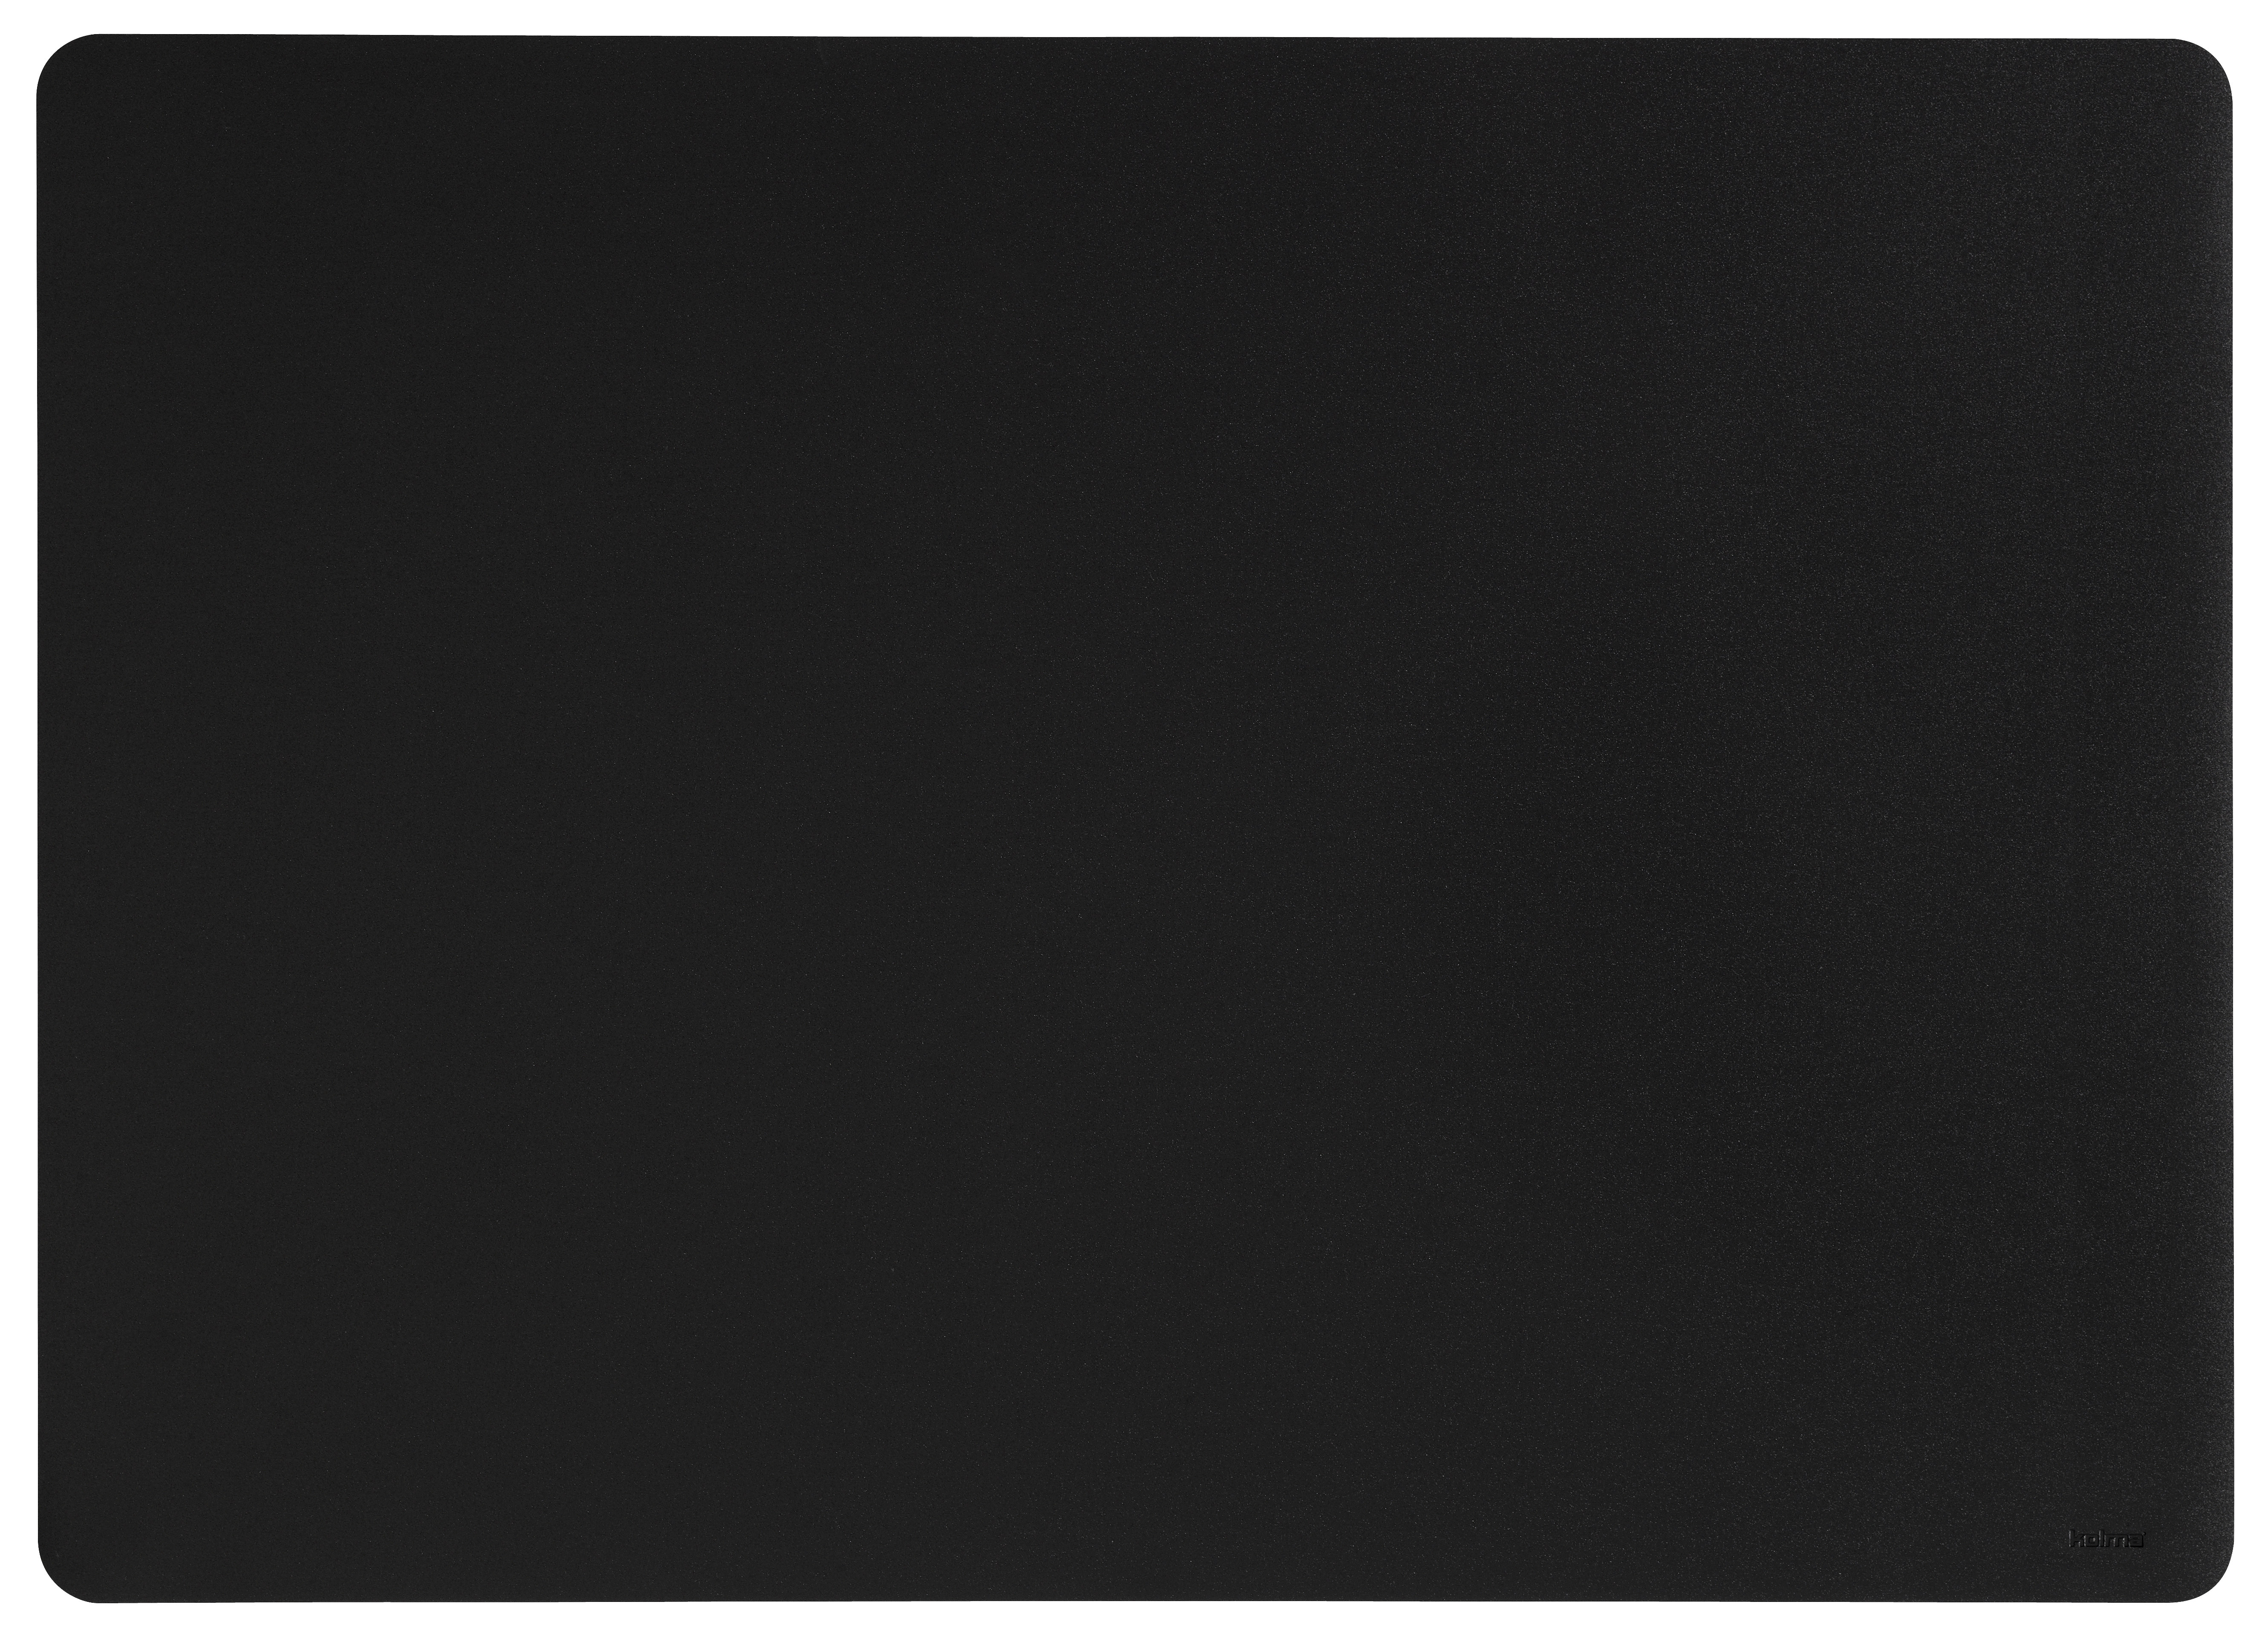 KOLMA Sous-main Selection 32.570.06 noir 70x50cm noir 70x50cm